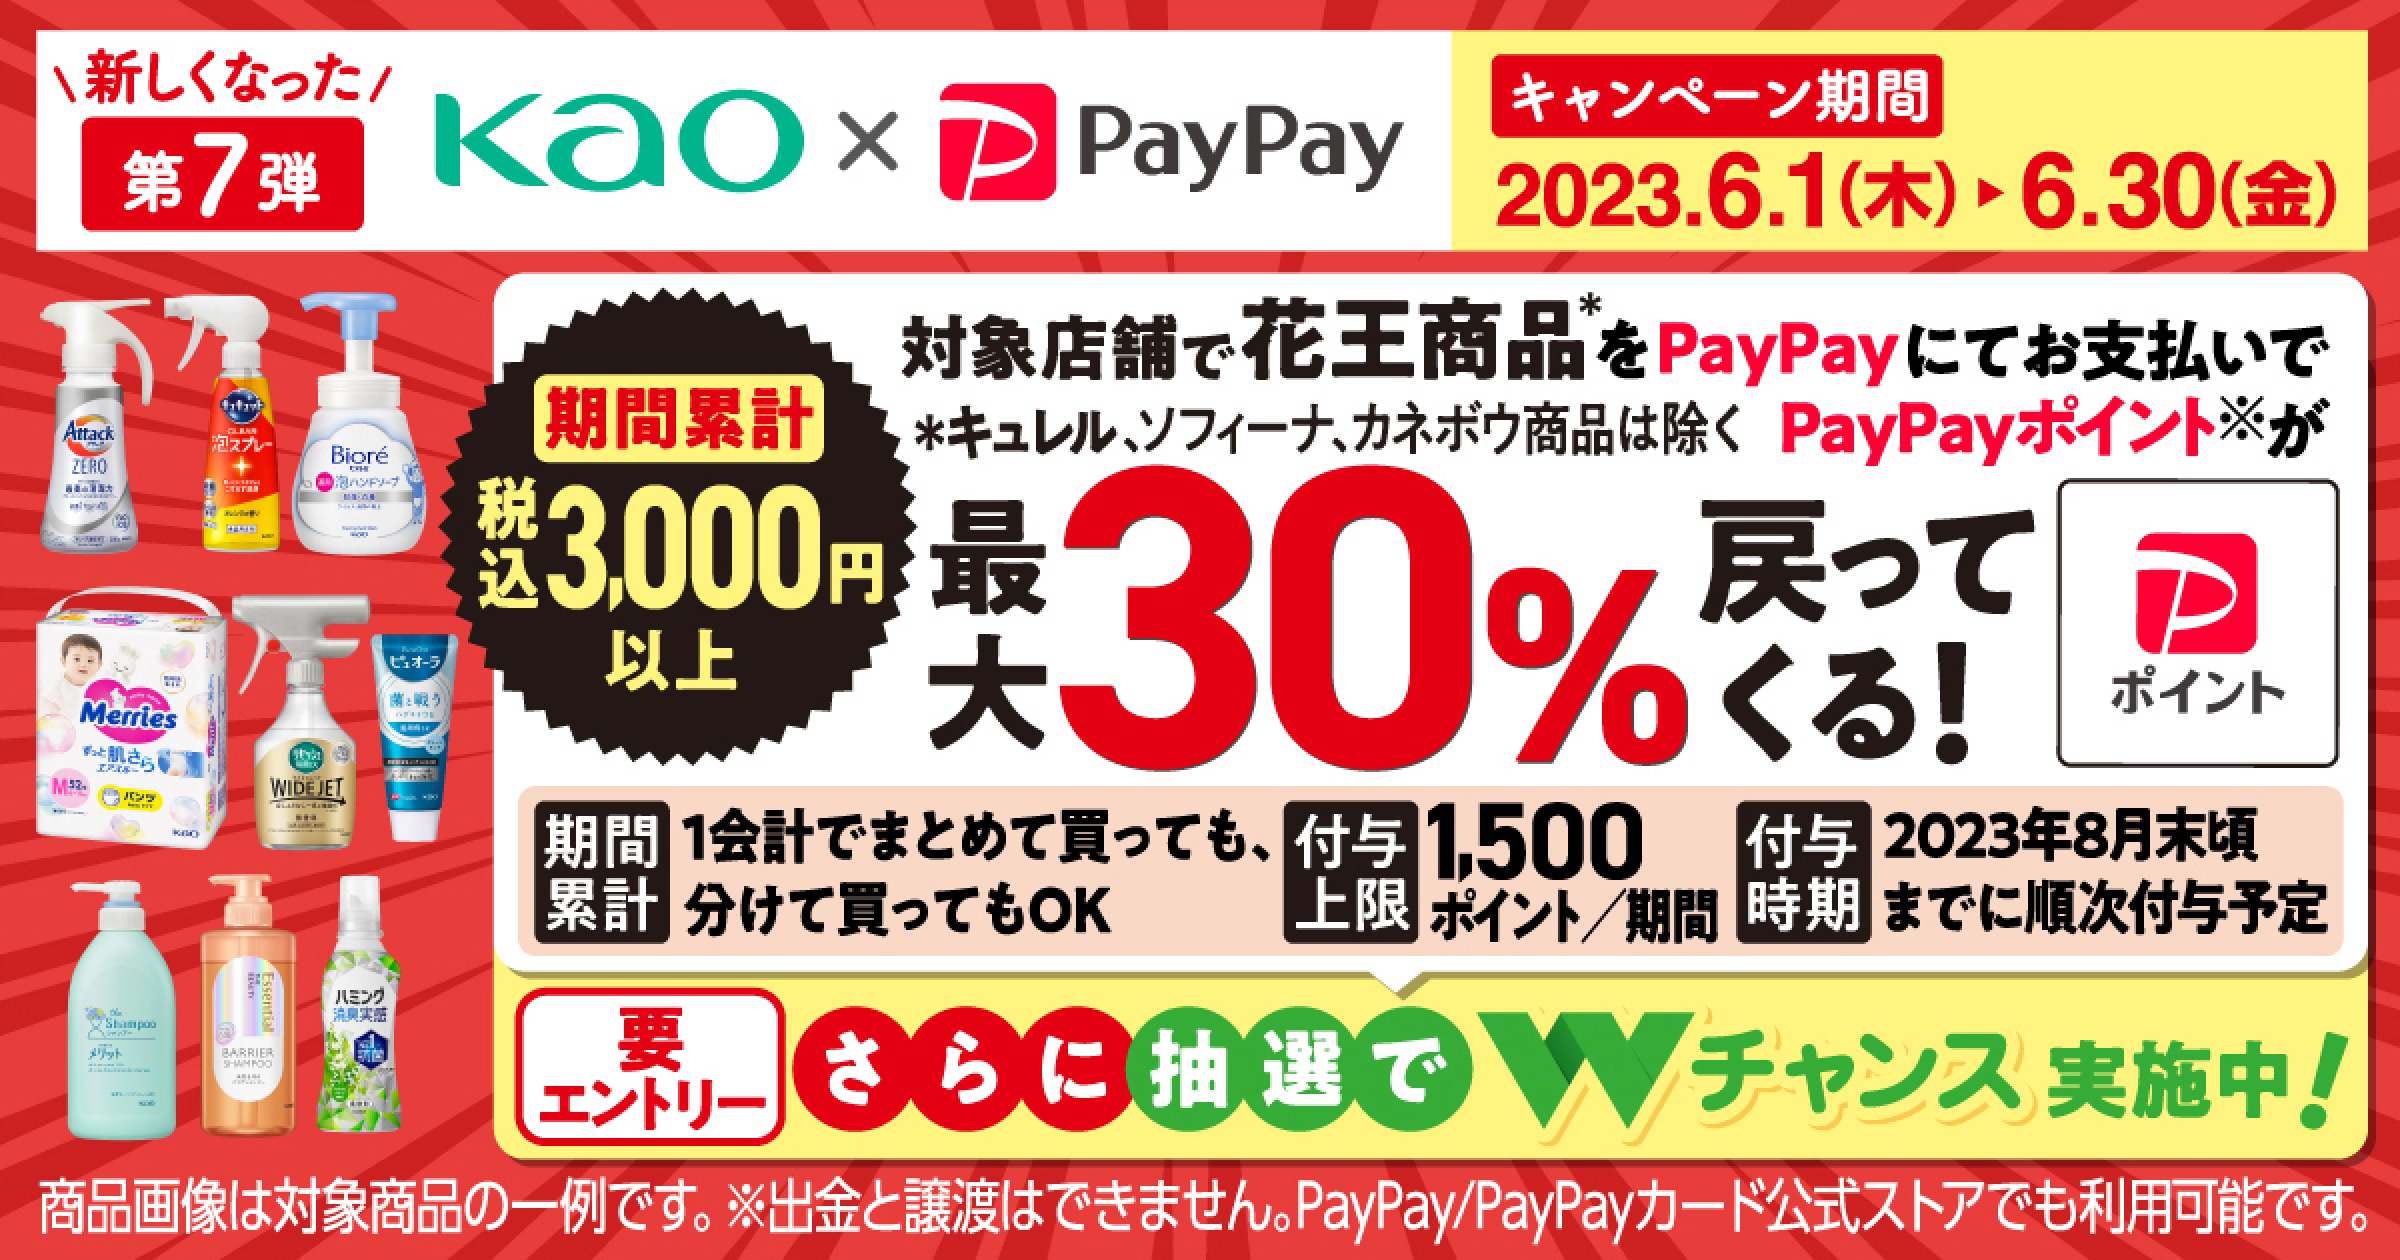 PayPayとYahoo! JAPAN、「花王商品の購入で最大30%戻ってくる